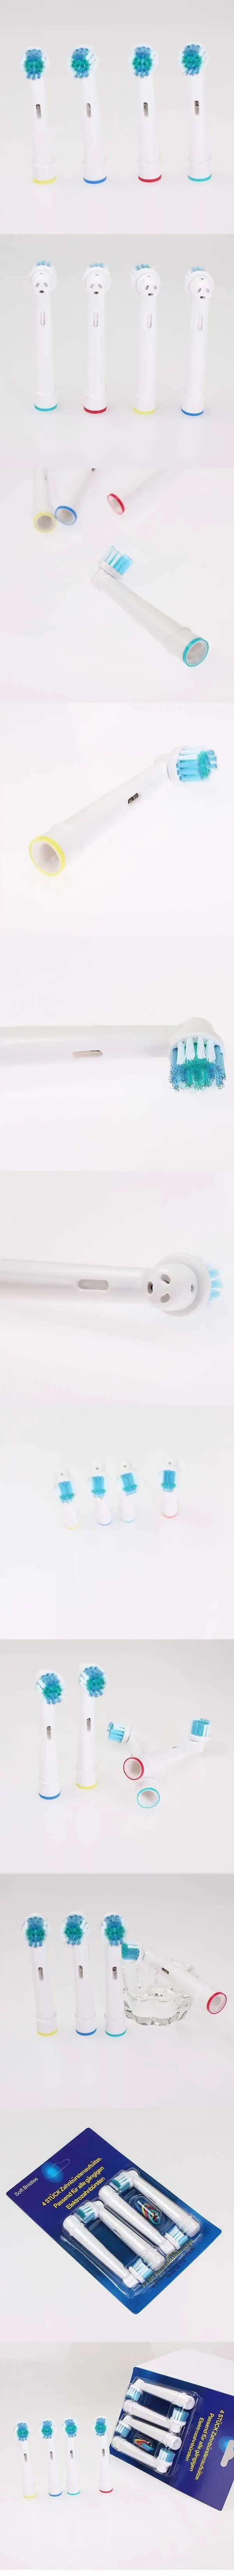 8 шт./лот, электрические сменные насадки для зубных щеток для полости рта B, электрическая зубная щетка, гигиена, уход, чистый Профессиональный уход, высокое качество